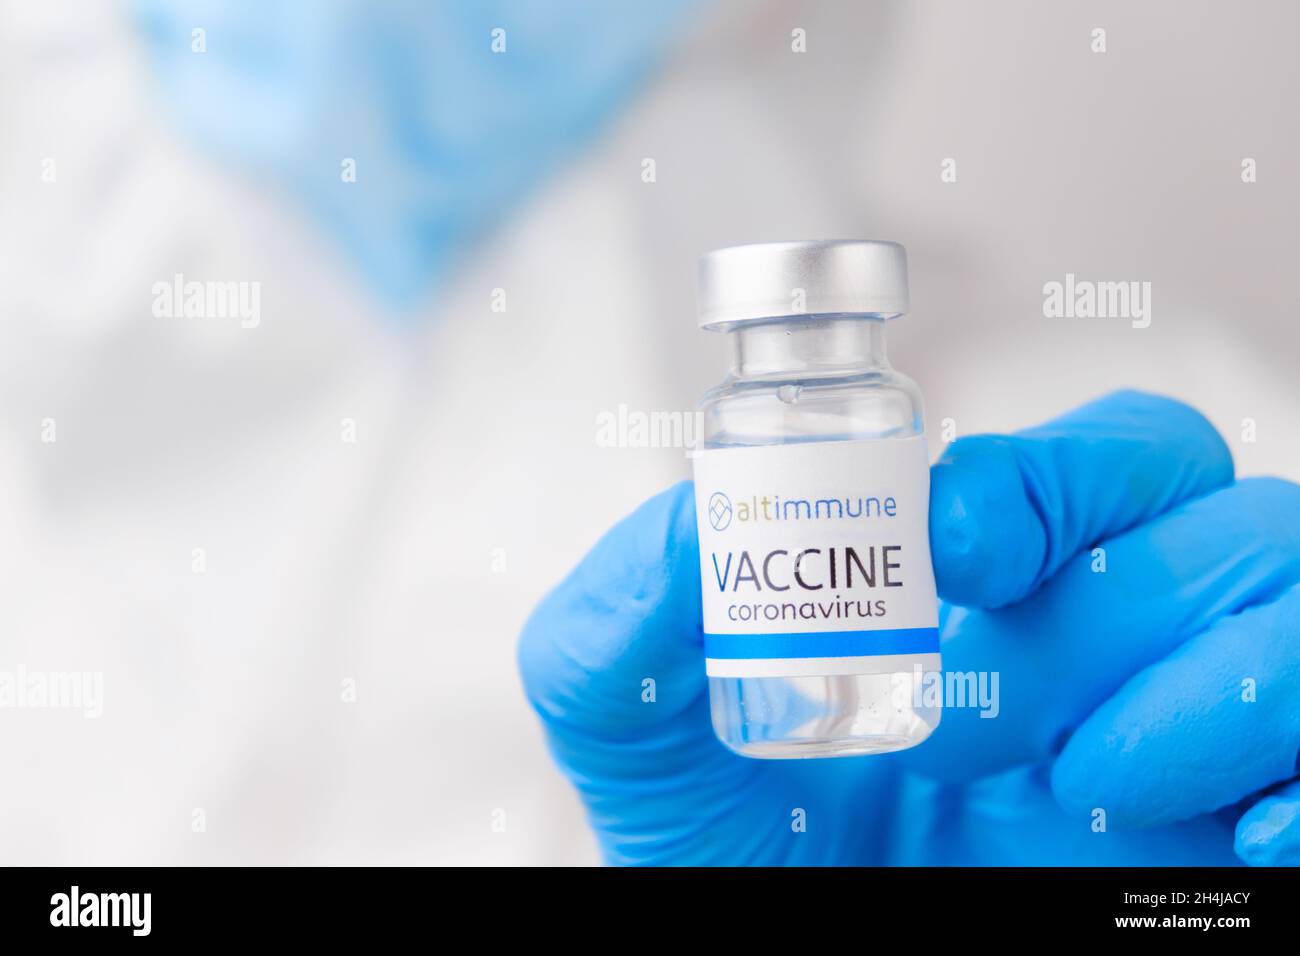 Vaccino di Altimmune contro SARS-Cov-2, coronavirus o Covid-19 messo sul tavolo da un operatore medico nei guanti di gomma, marzo 2021, San Francisco, USA Foto Stock